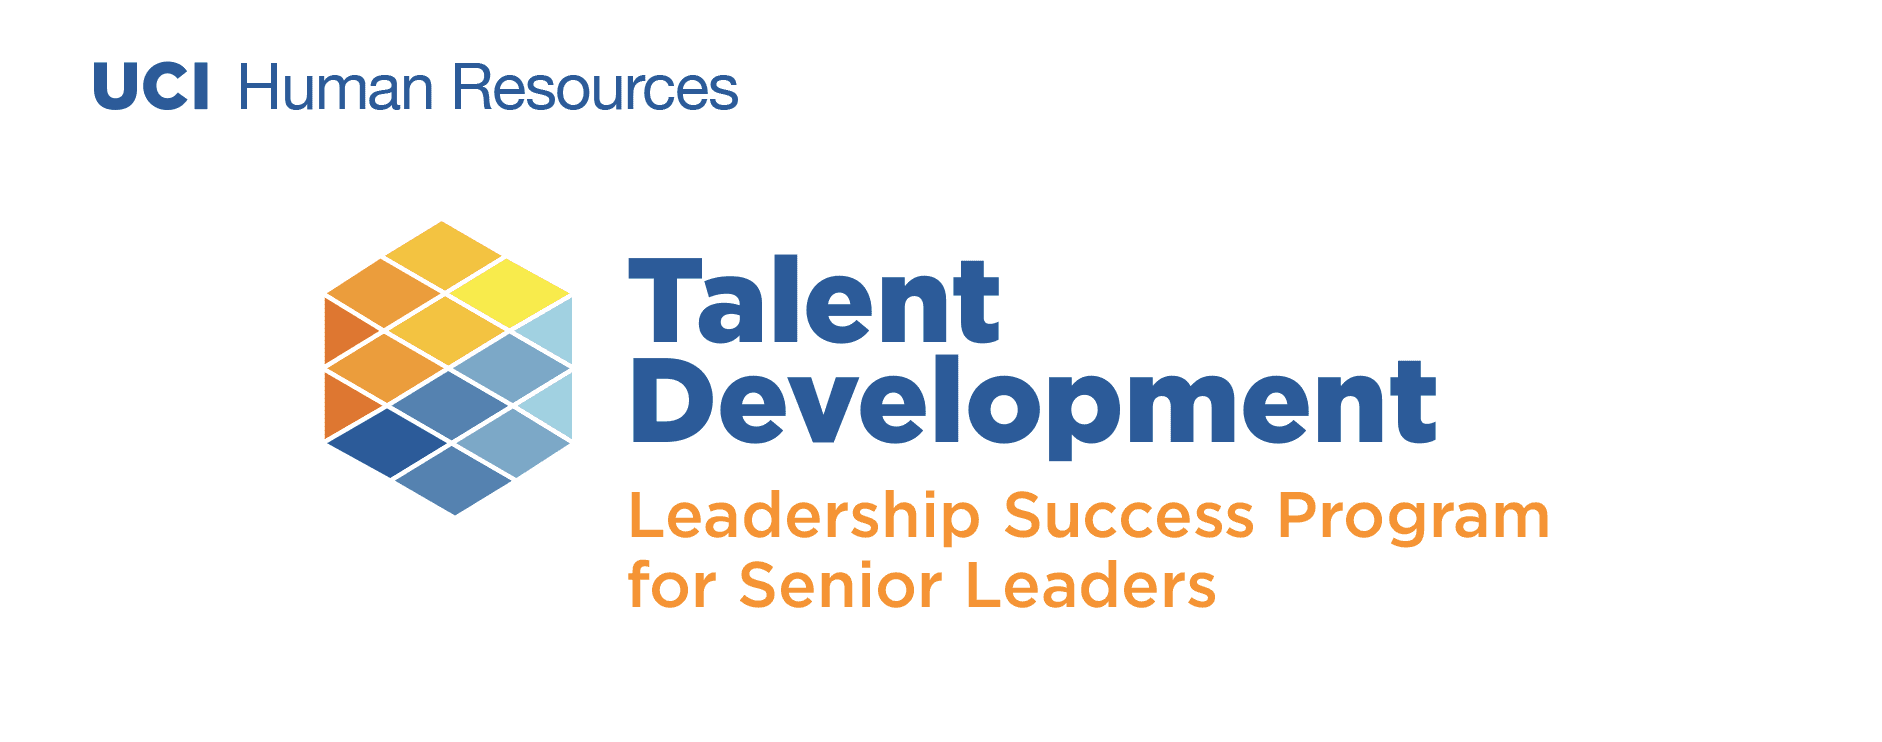 Talent Development - Leadership Development for Senior Leaders